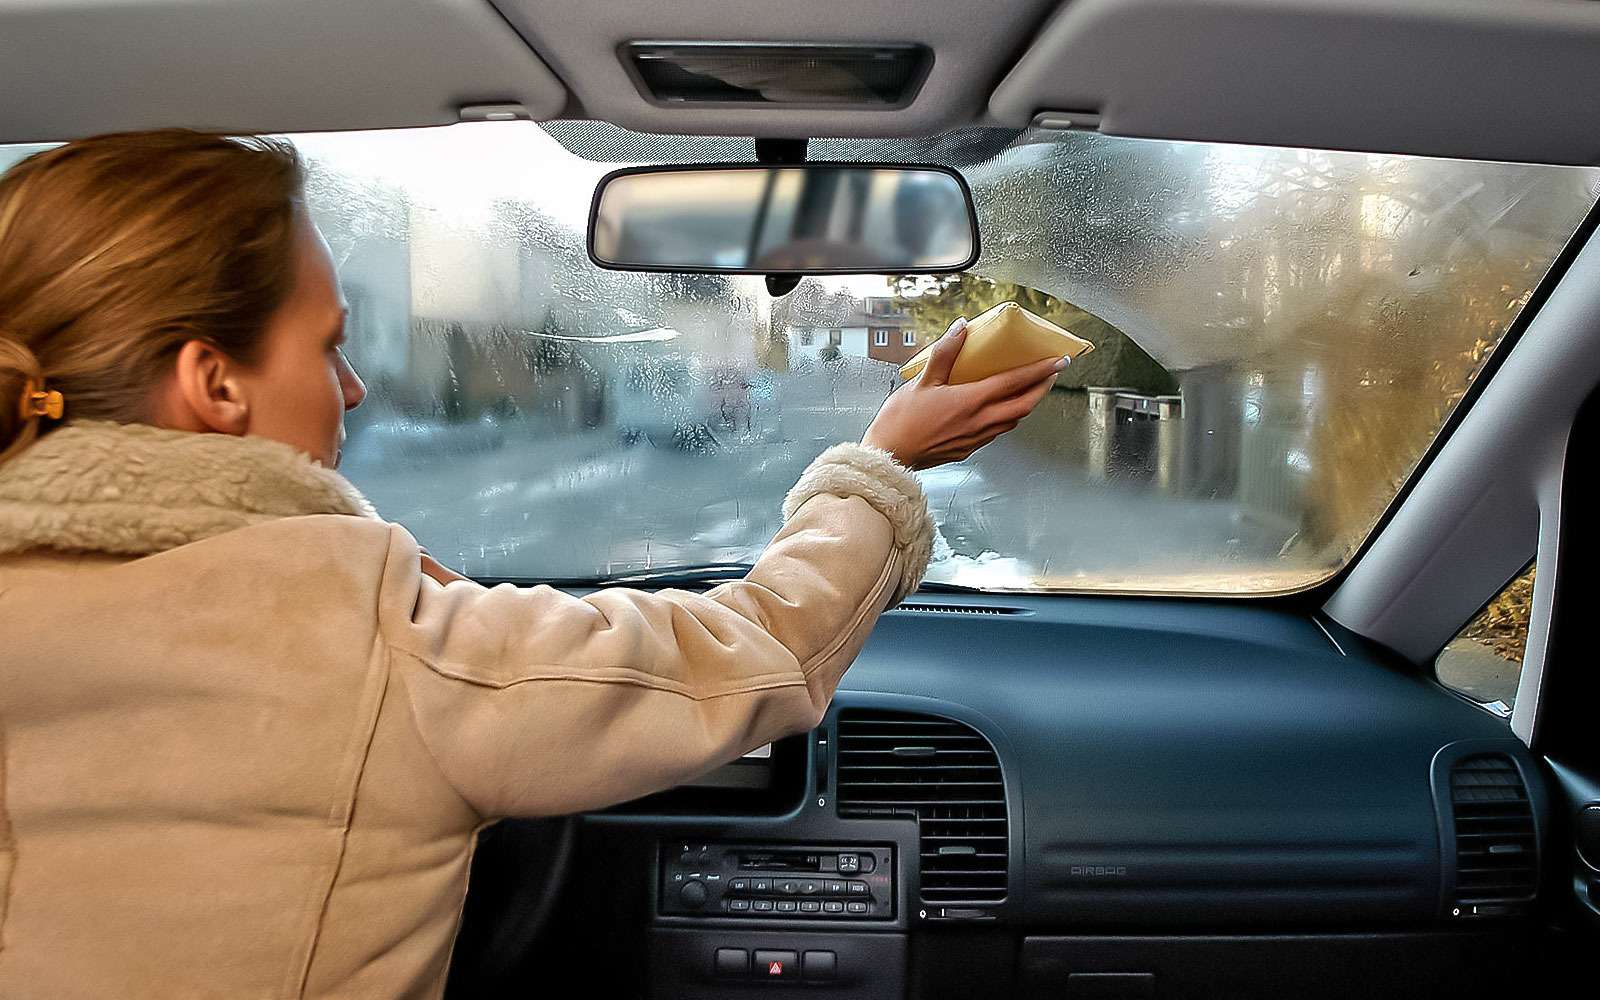 Мытье лобового стекла. Сырость в салоне автомобиля. Лобовое стекло внутри машины. Лобовое окно машины. Окно машины изнутри.